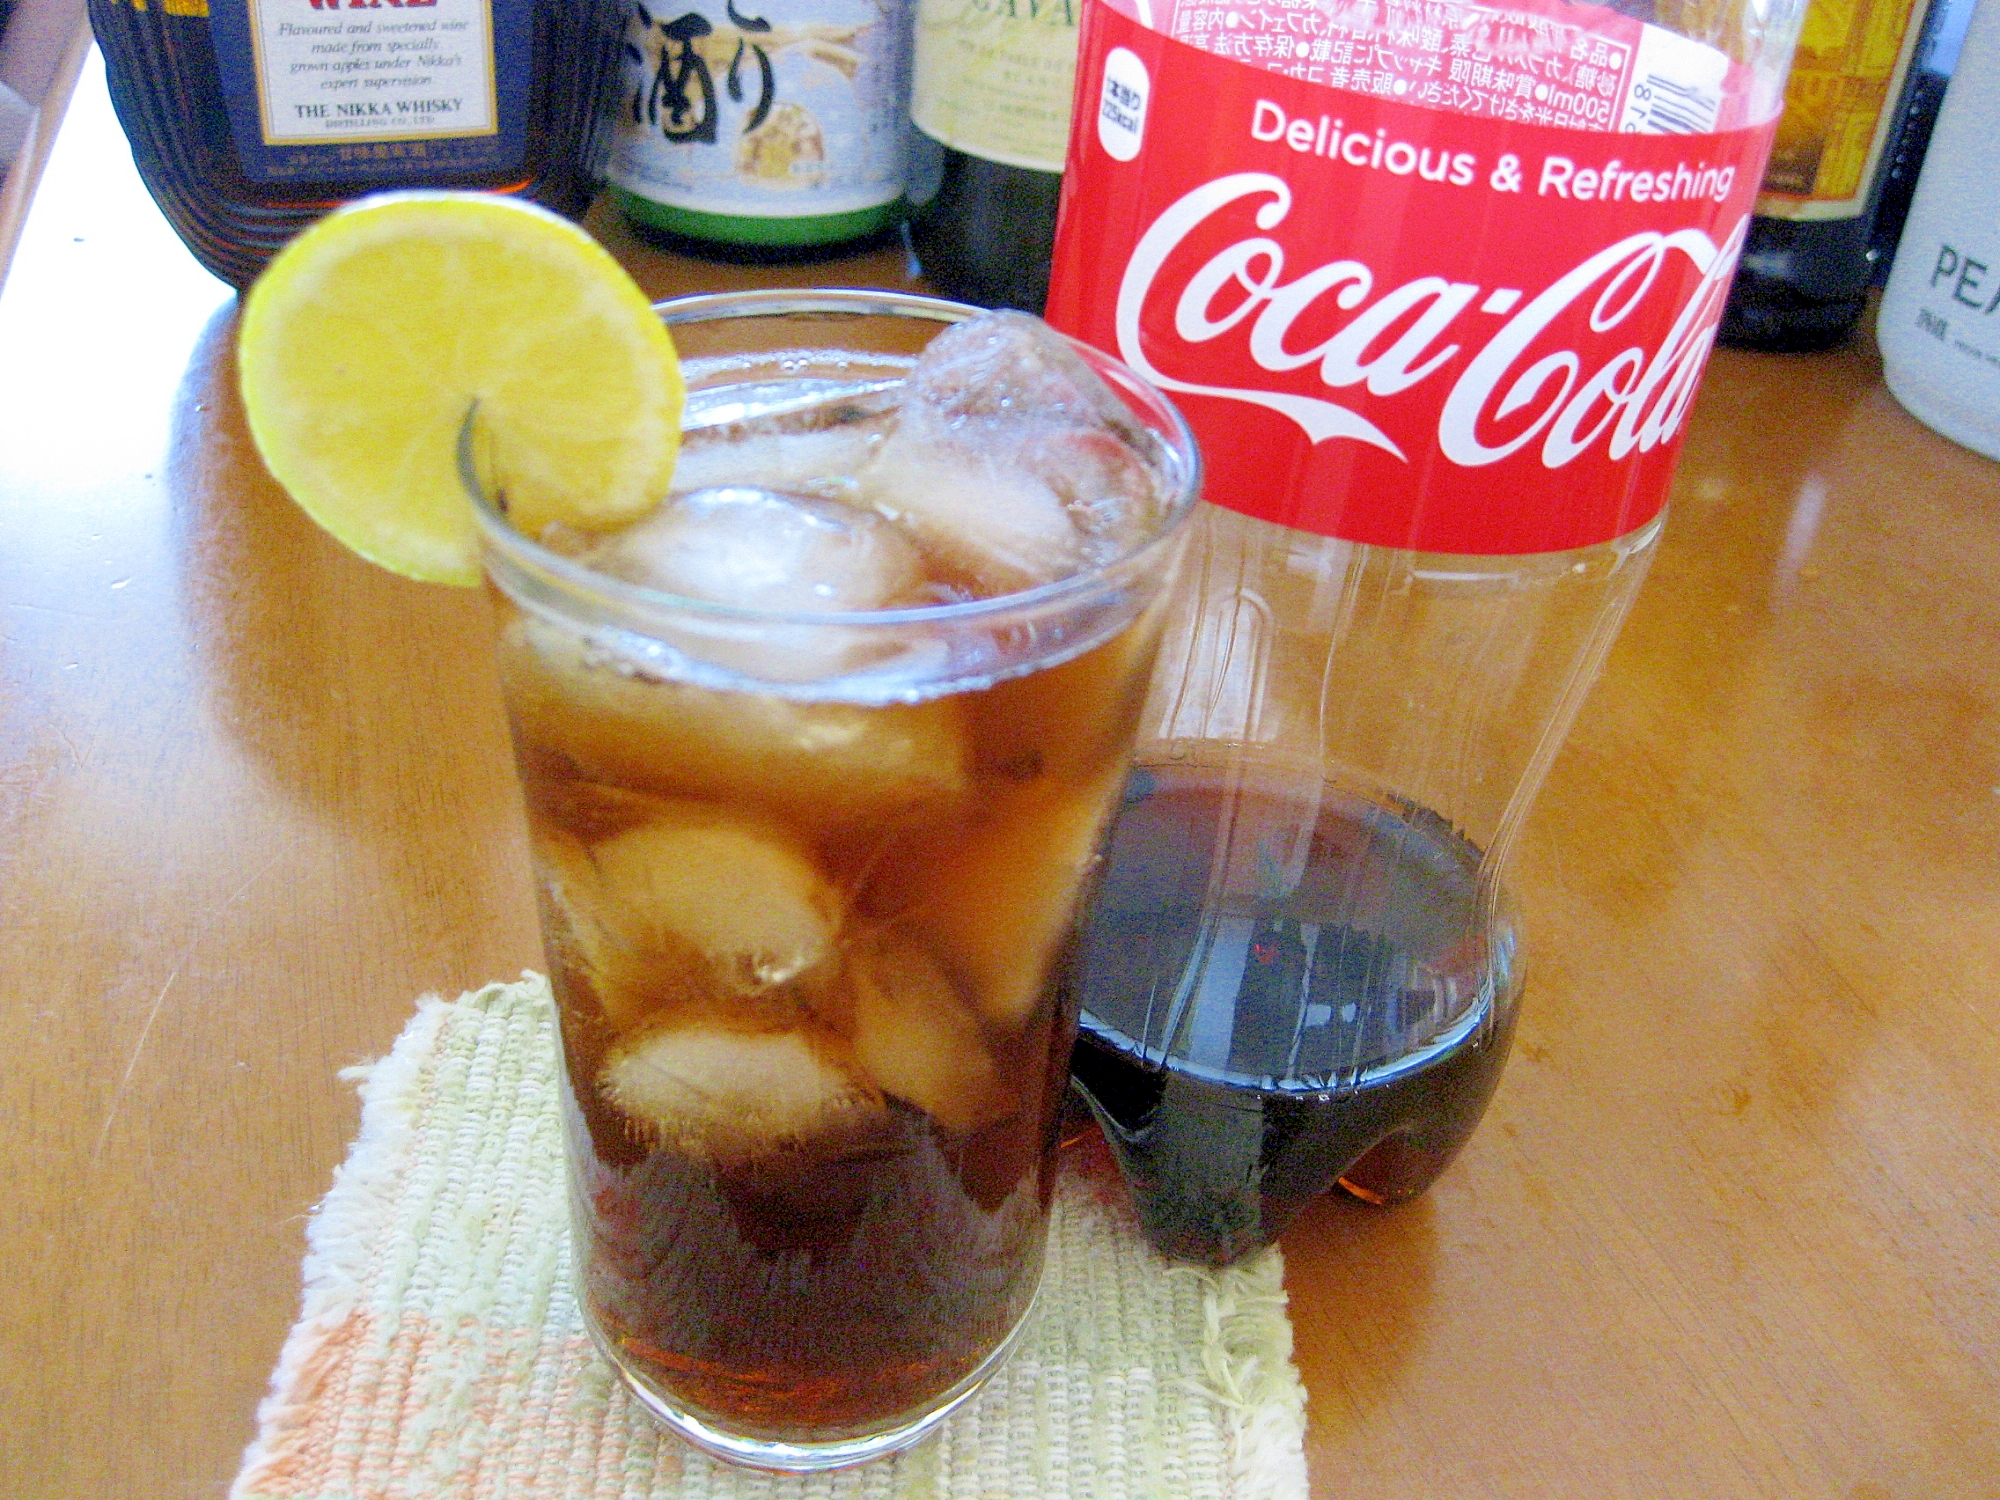 【コカ･コーラ】の白ワインとすだちで爽やかカクテル